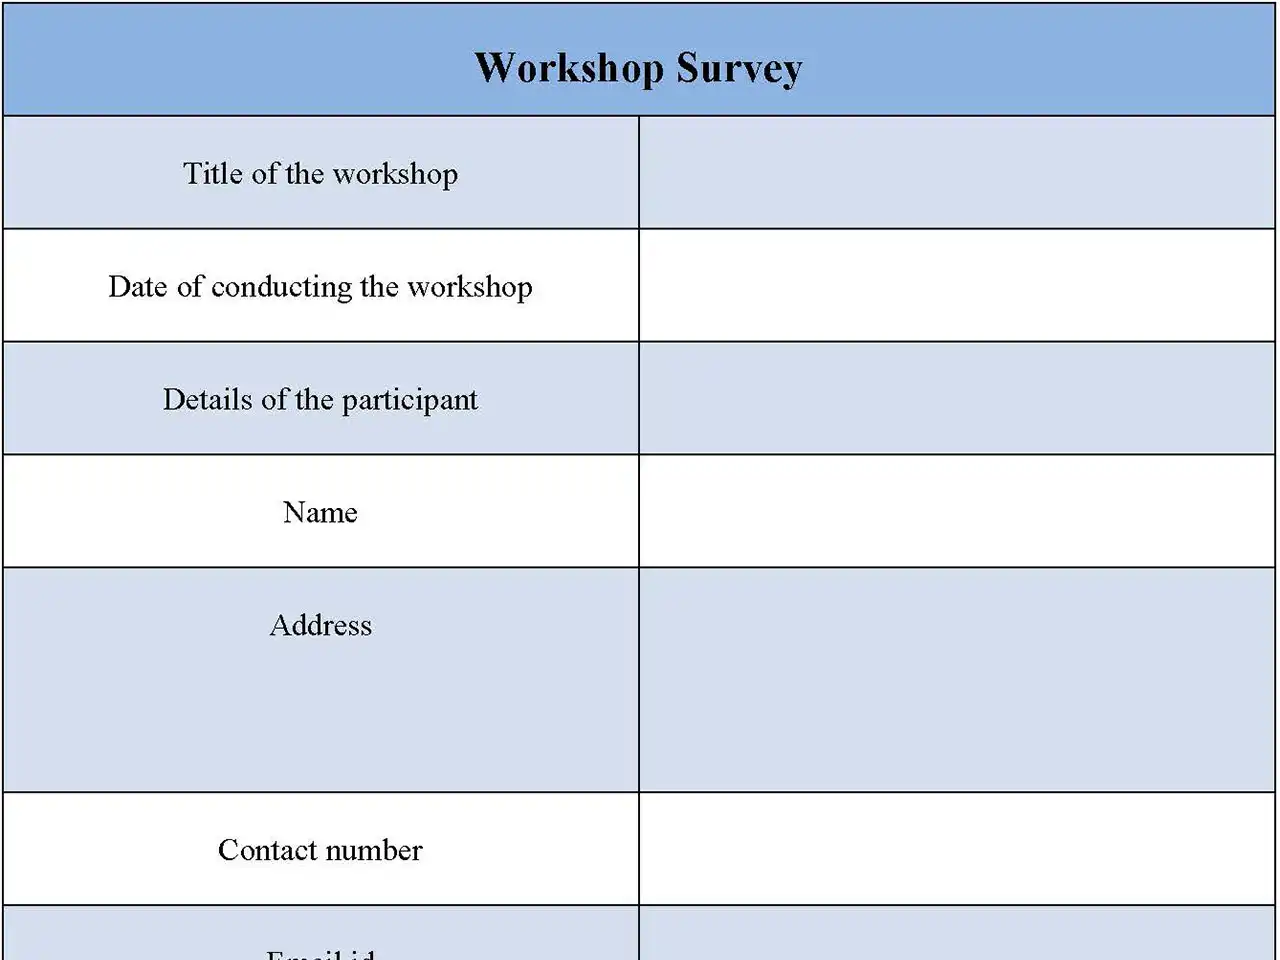 Workshop Survey Form